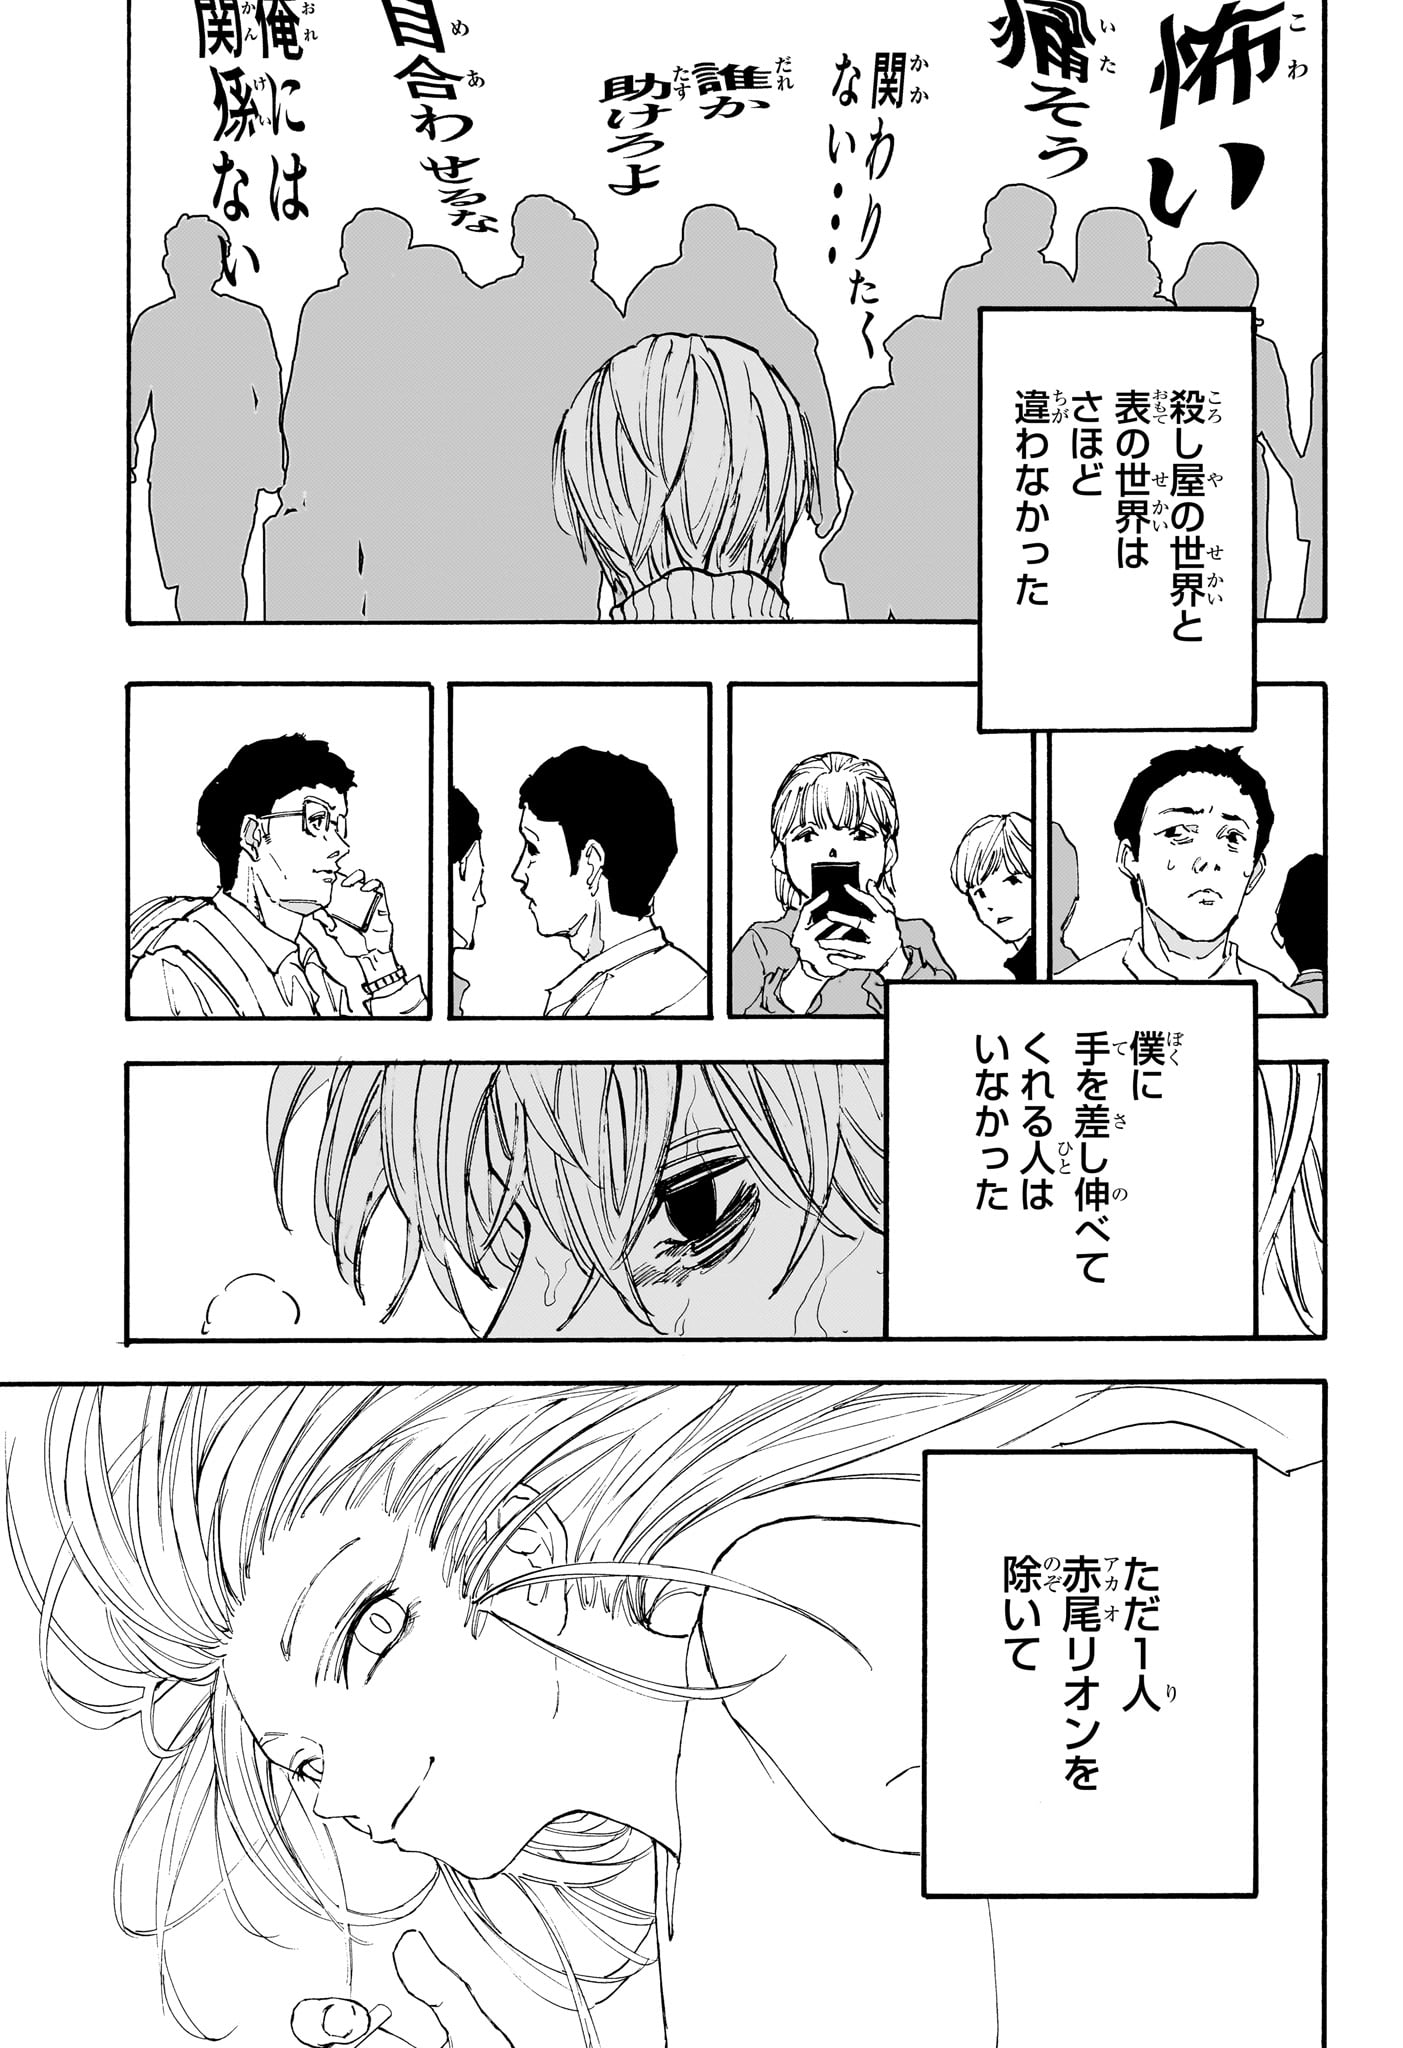 Sakamoto Days - Chapter 175 - Page 13